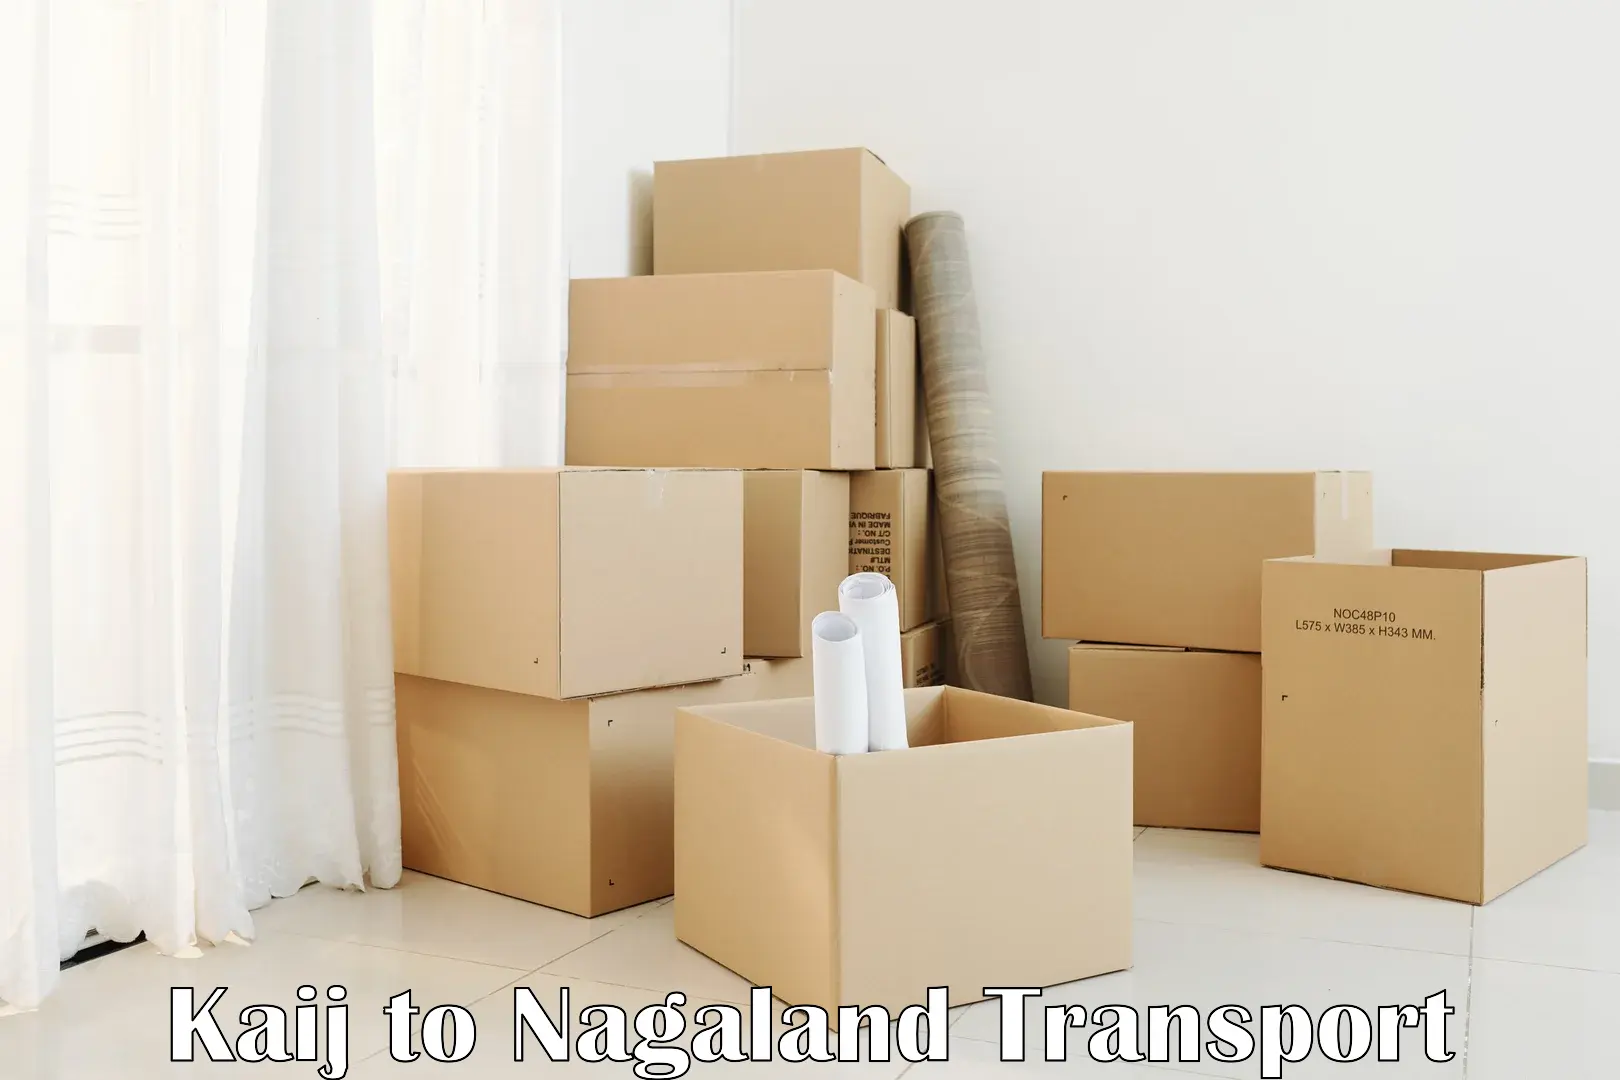 All India transport service Kaij to Nagaland